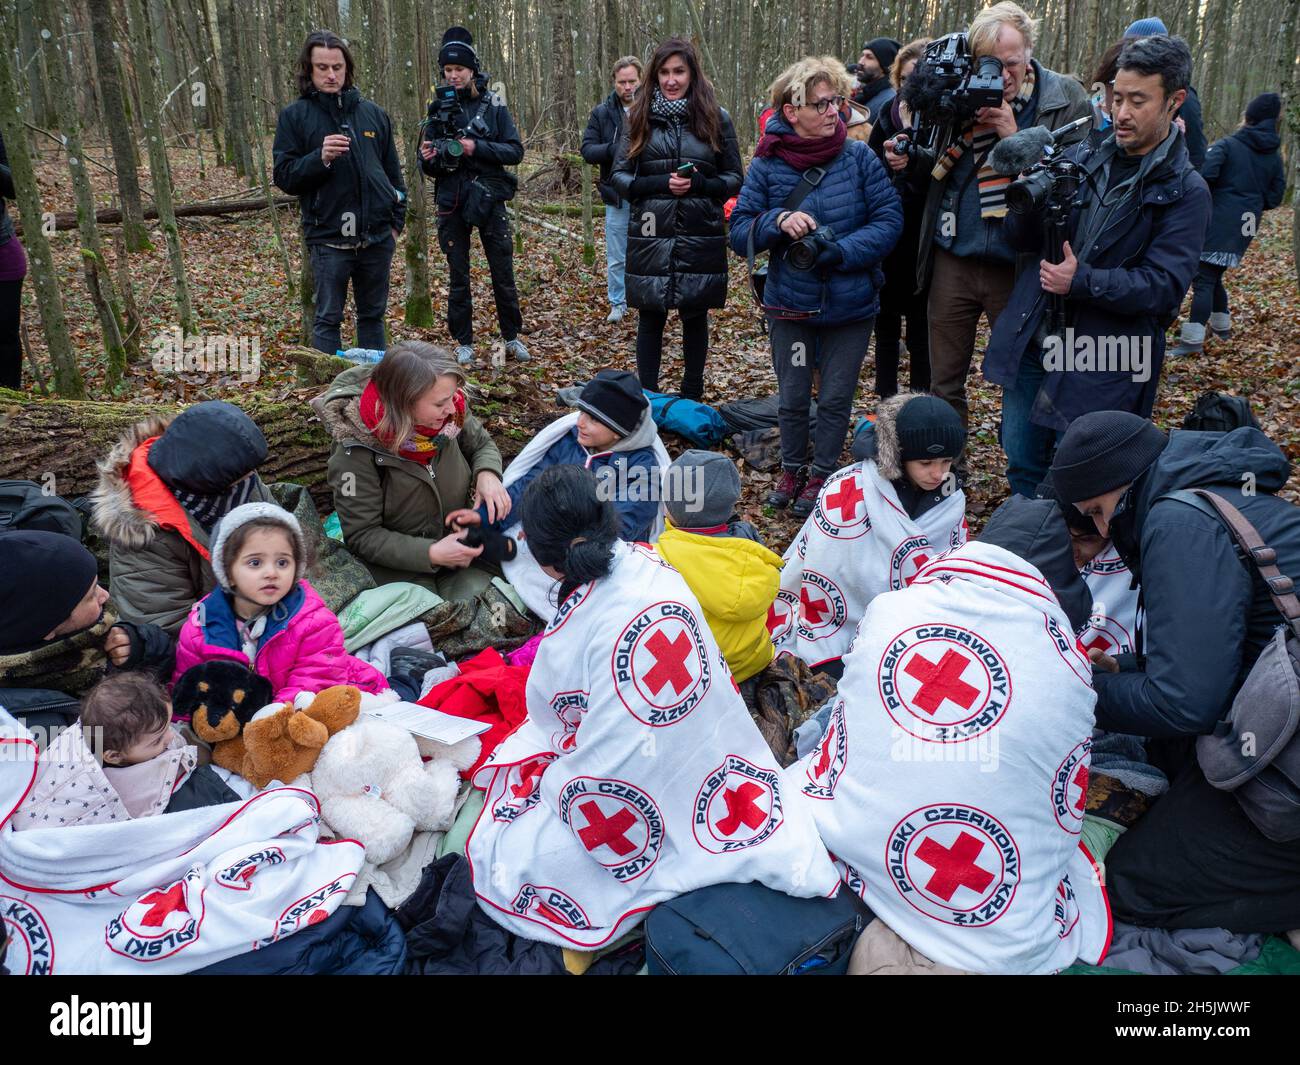 Polnische und internationale Medien berichten über die Geschichte des Flüchtlings in Polen.Eine siebzehnköpfige Flüchtlingsfamilie, darunter neun Kinder aus Dohuk, Irak, verbrachte siebzehn Tage in einem Wald an der polnischen Grenze in Belarus und wurde achtmal zurückgedrängt. Verzweifelt mit einem sieben Monate alten Baby und einer älteren Frau mit Beinproblemen beschlossen sie, Aktivisten um Hilfe zu bitten. (Foto von Jana Cavojska / SOPA Images/Sipa USA) Stockfoto